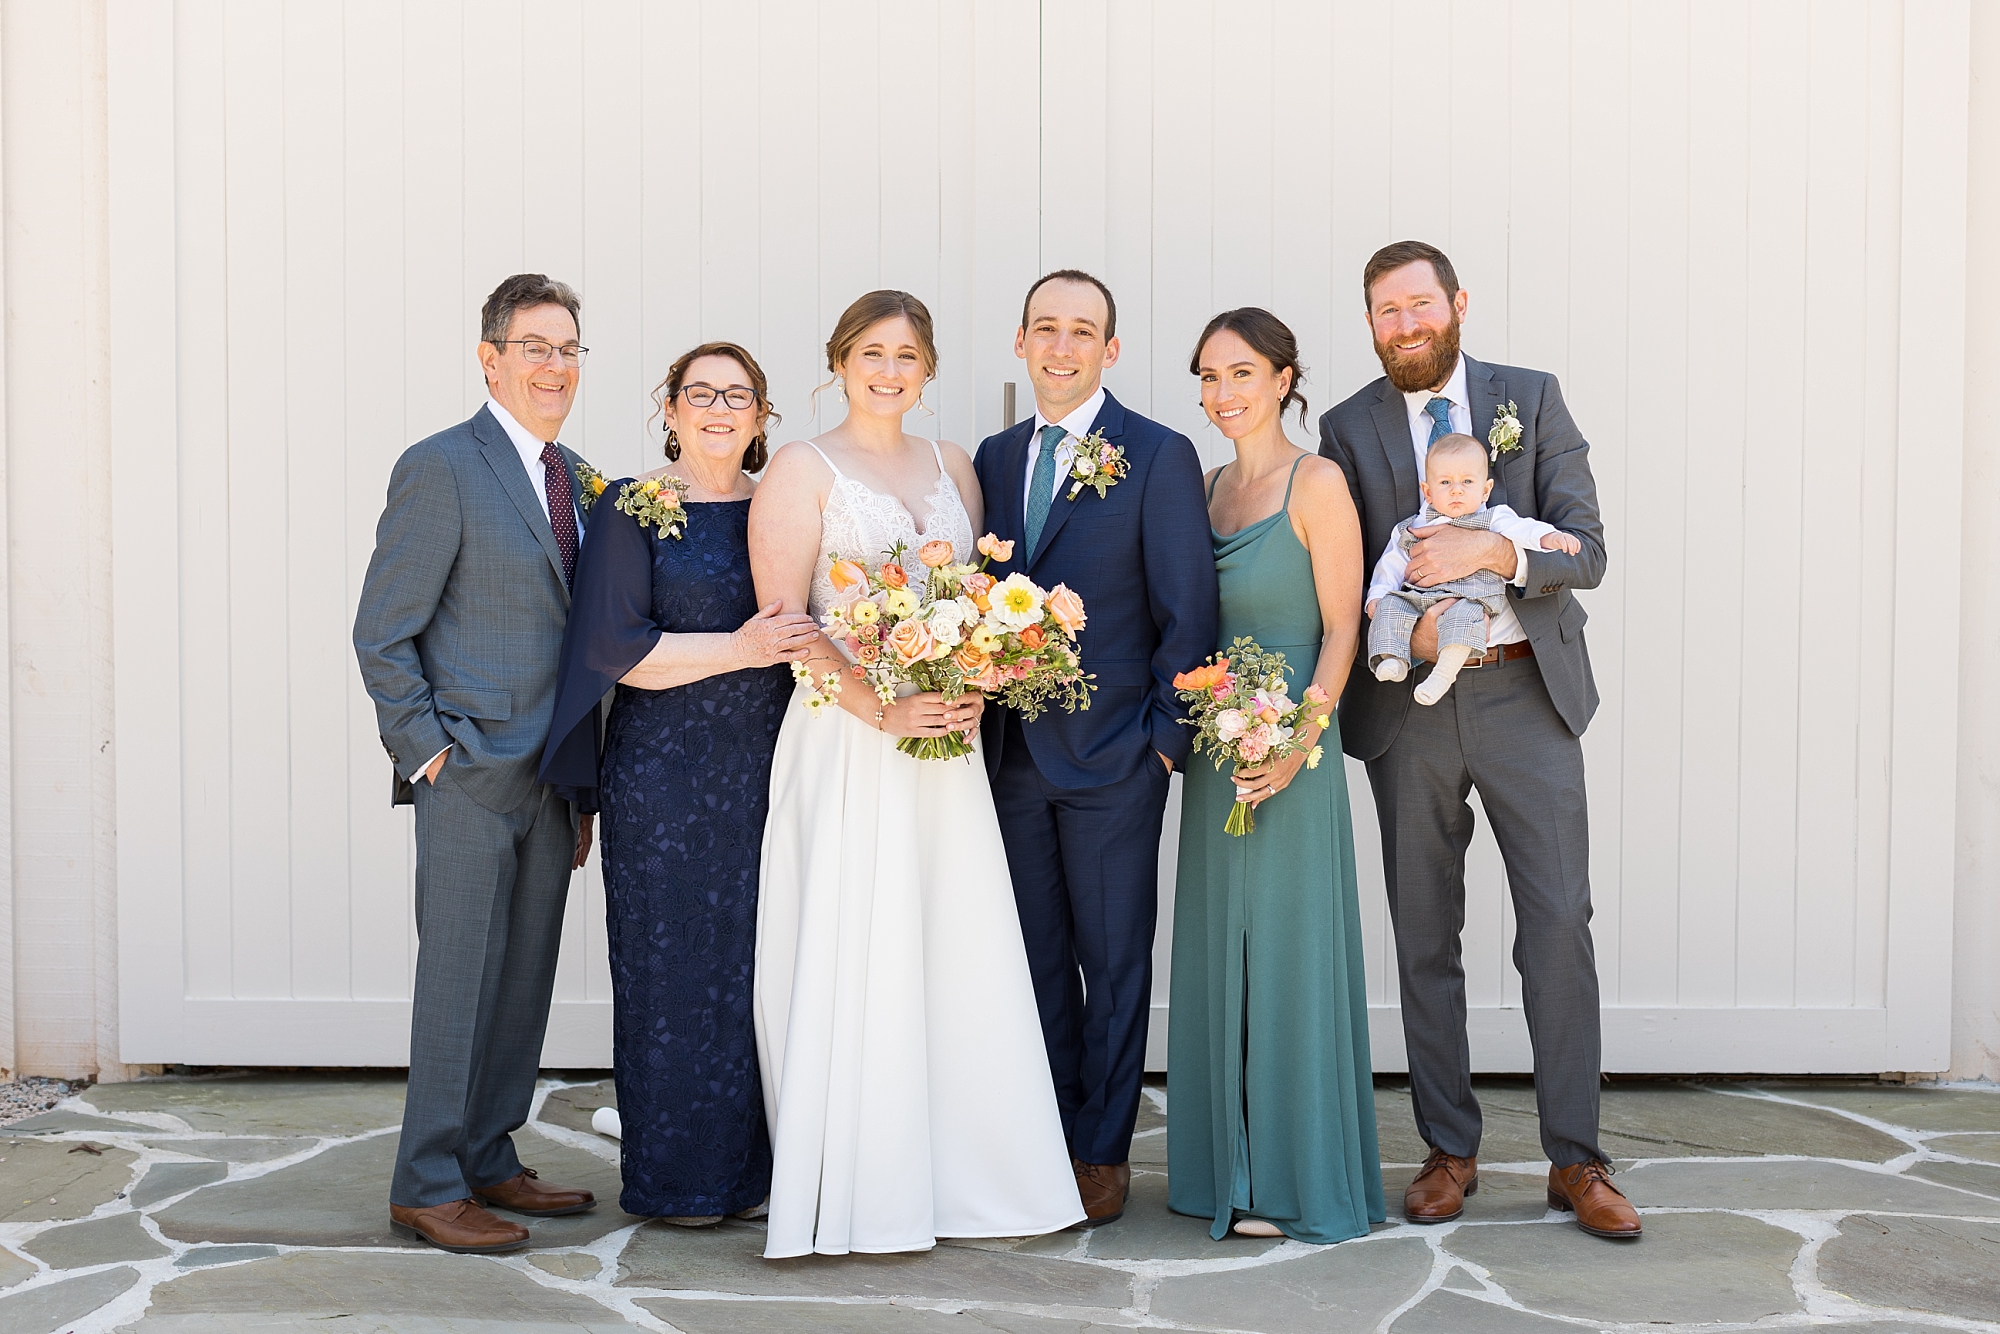 Wedding family photos at Carolina Grove | Raleigh NC Wedding Photographer | Sarah Hinckley Photography